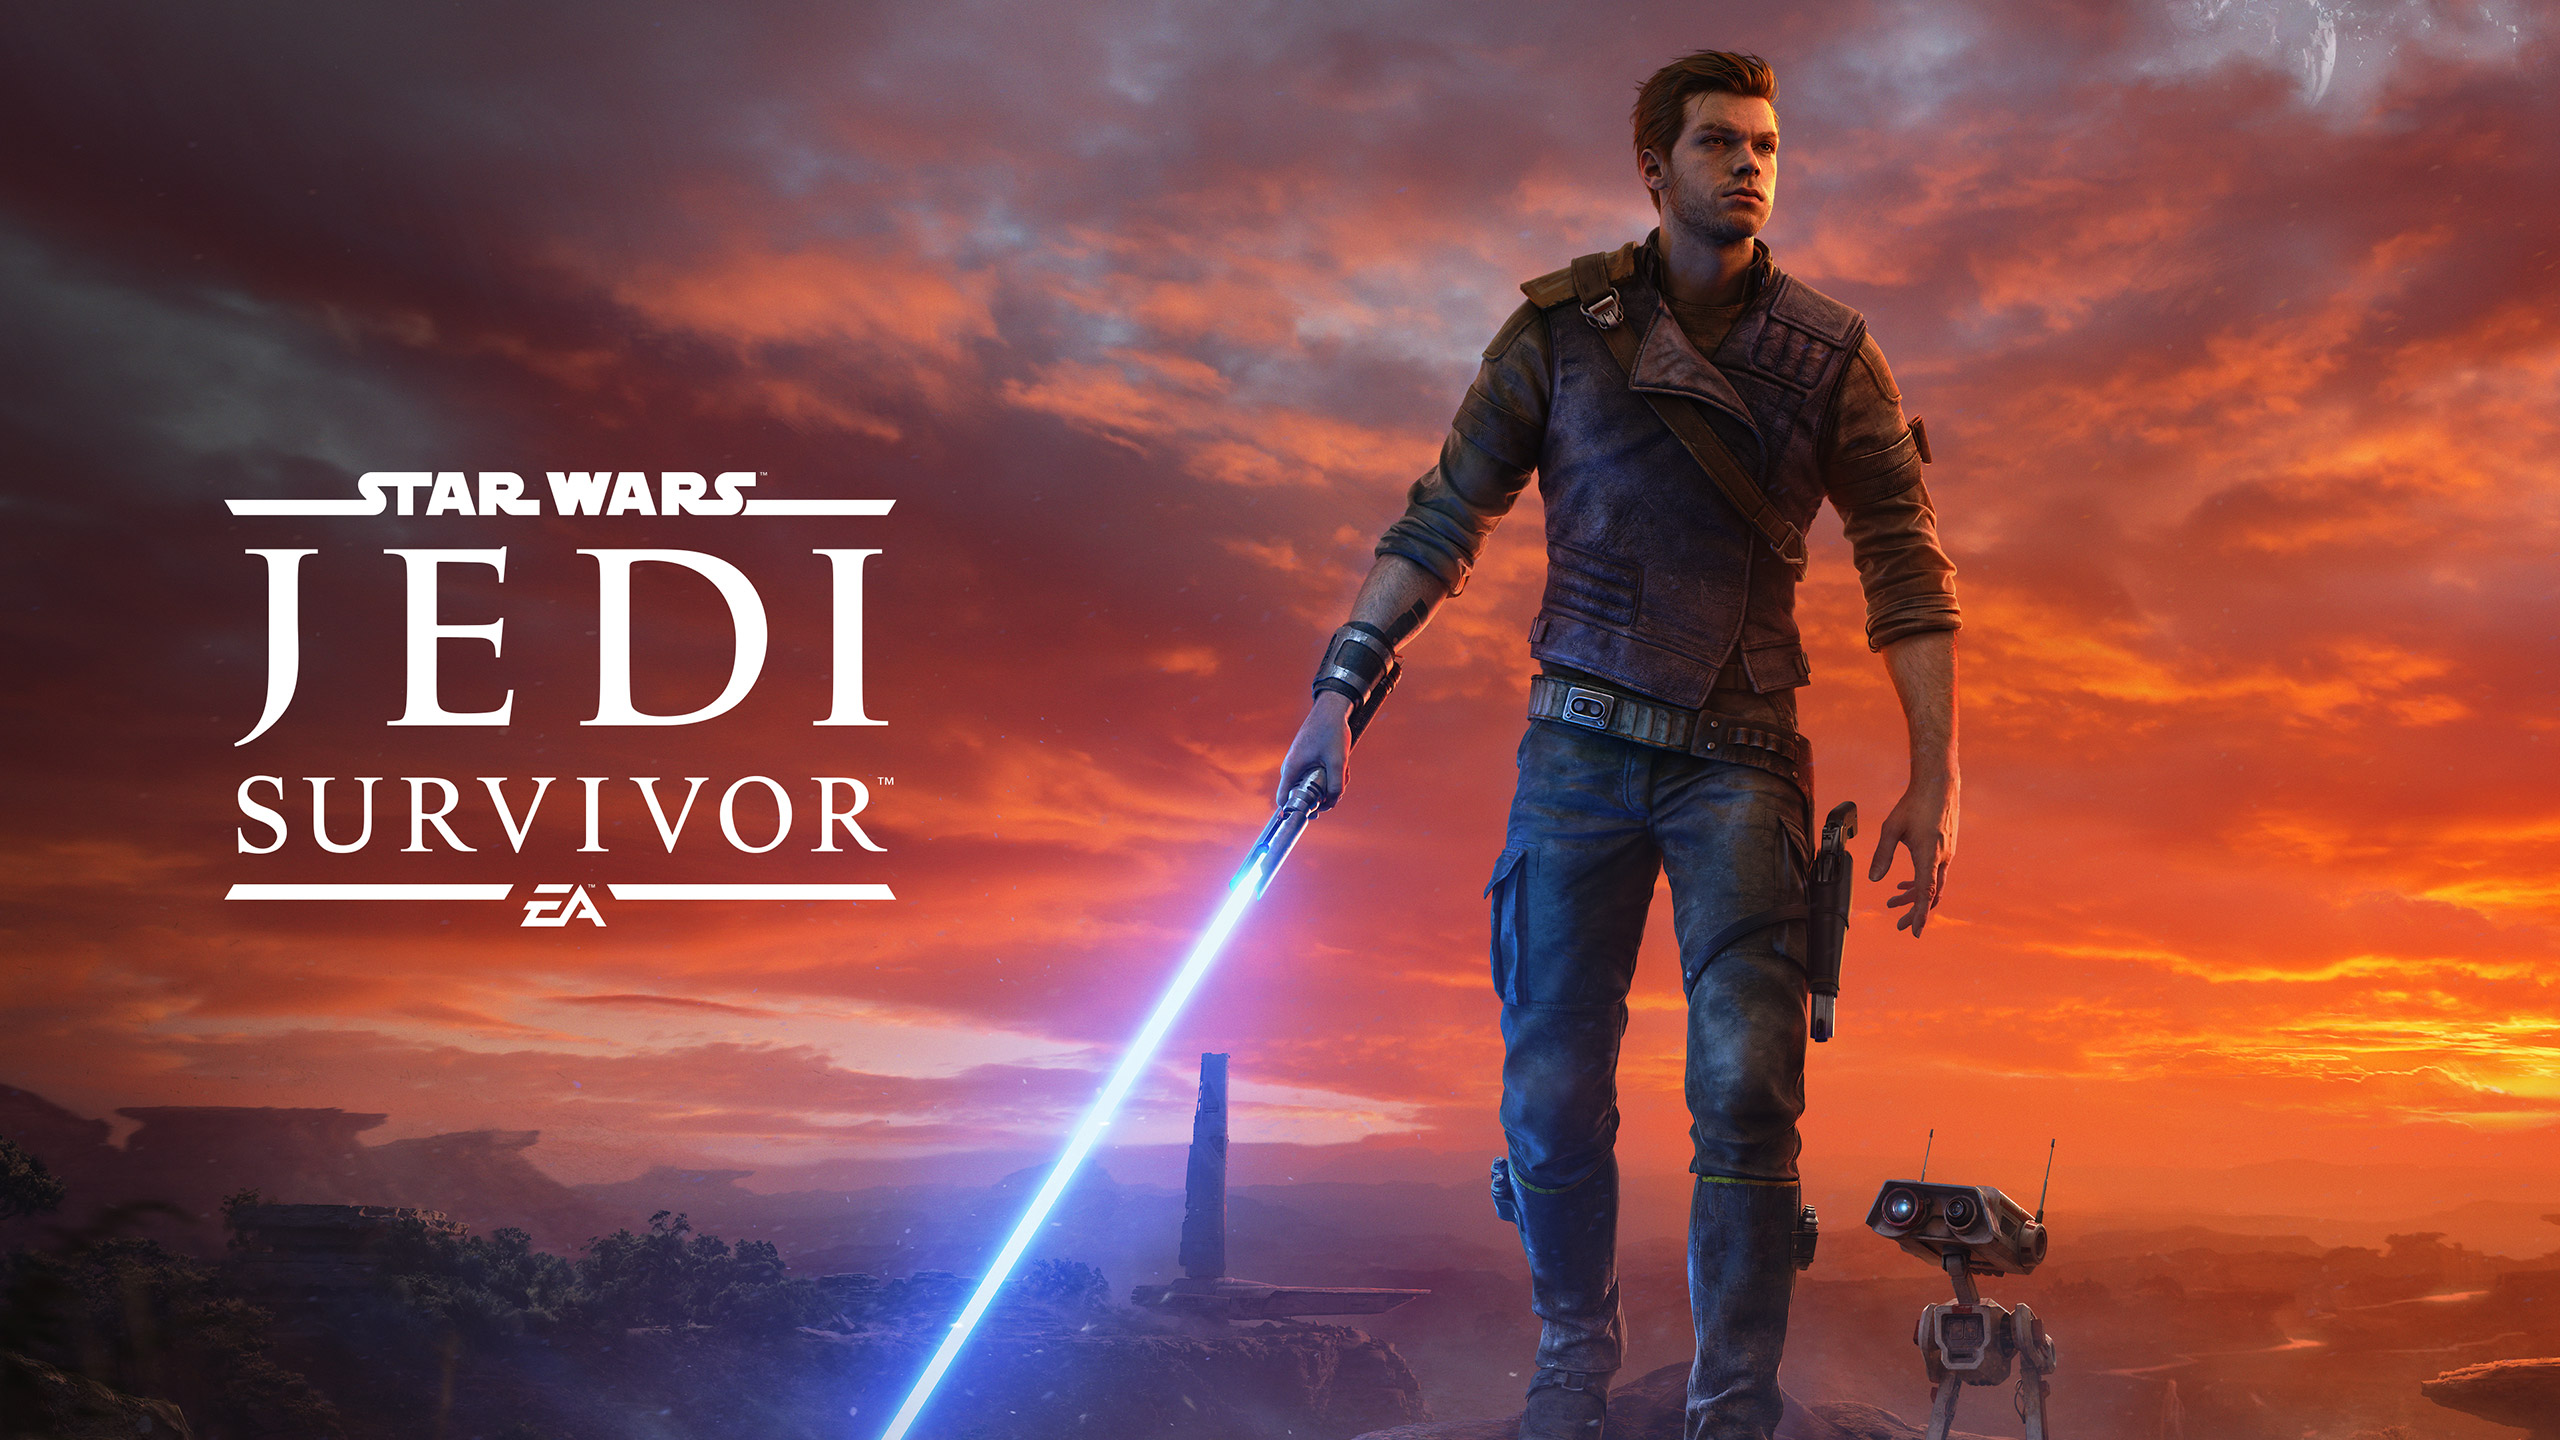 Star Wars Jedi: Survivor y Dead Island 2, encabezan el listado de los títulos más destacados del mes.